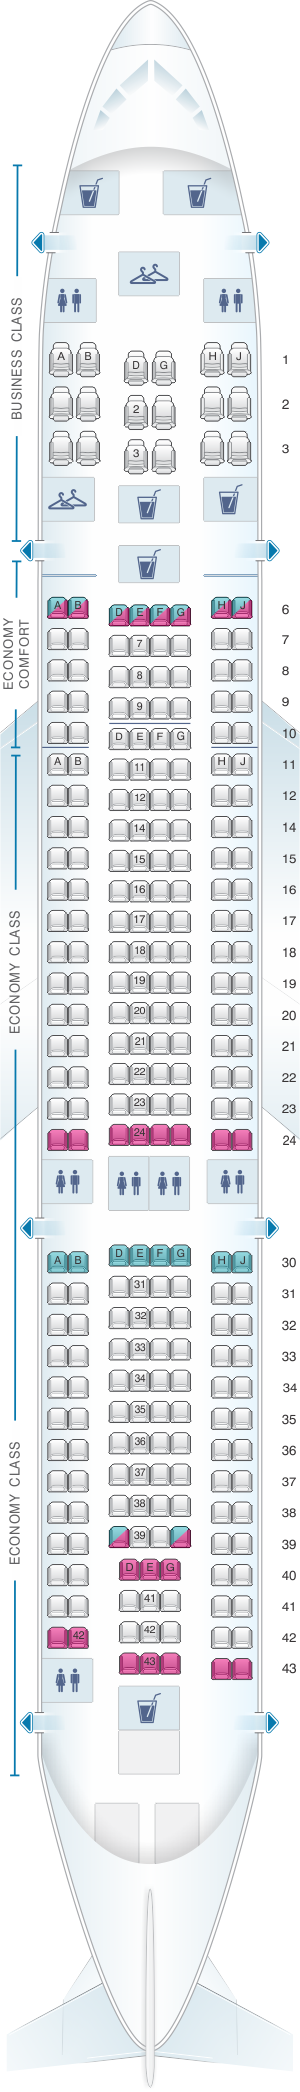 Klm A330 Seat Map Sexiz Pix